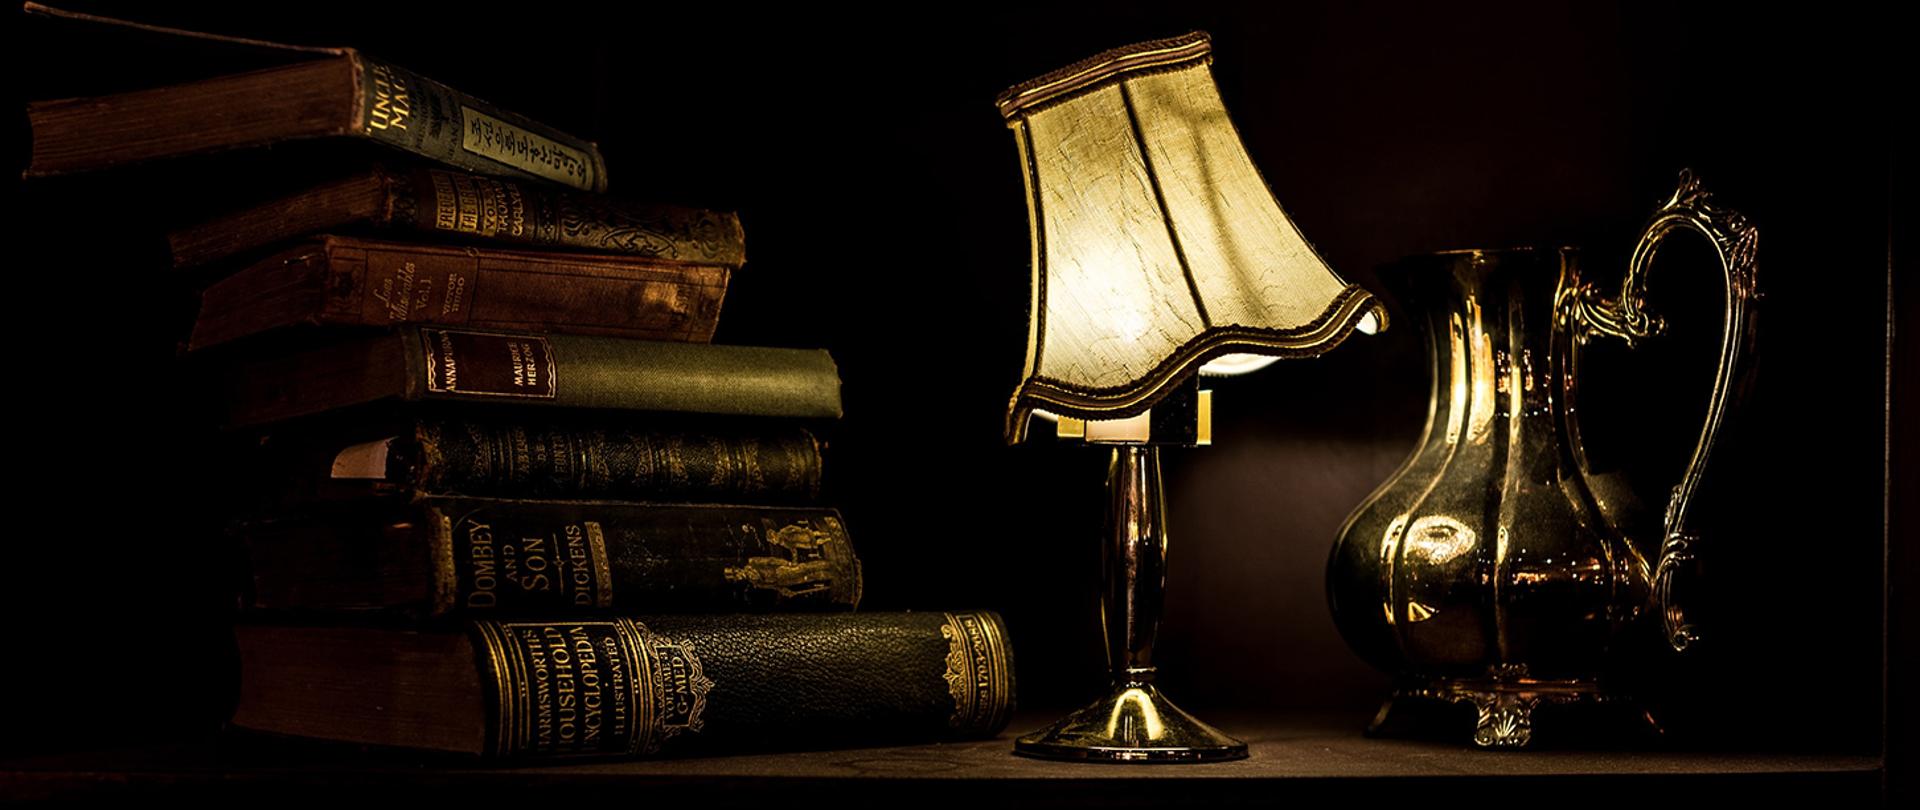 Baner przedstawiający książki, lampę oraz dzban